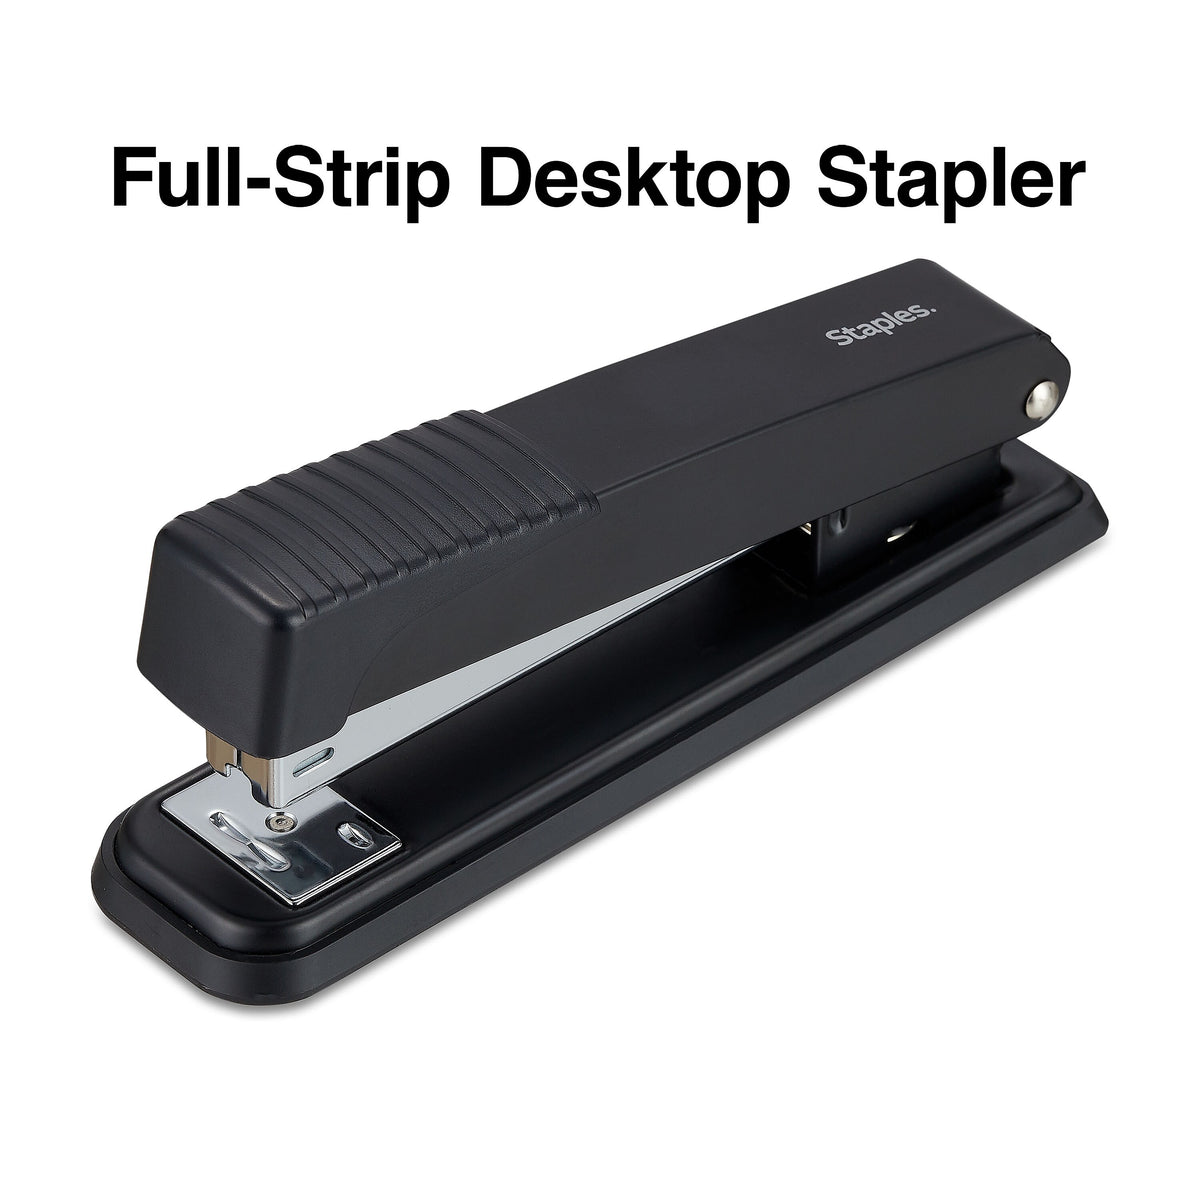 Staples Desktop Stapler, Full-Strip Capacity, Black